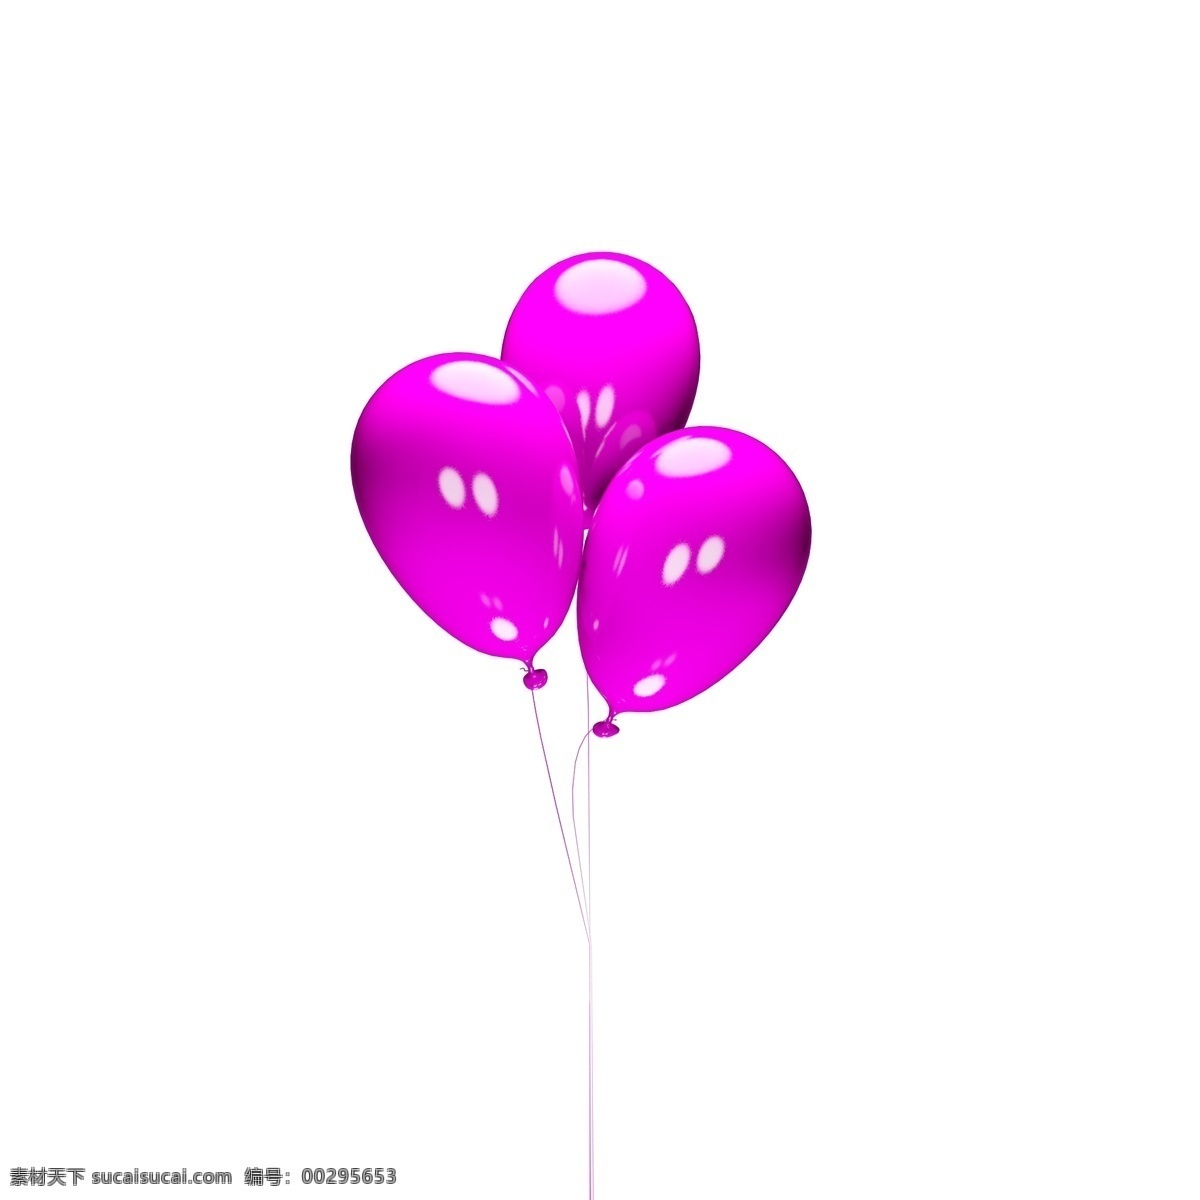 亮 粉色 漂浮 气球 装饰 亮粉色气球 气球装饰 浪漫气球 喜庆 一束 浪漫 玩具 亮色 c4d 立体